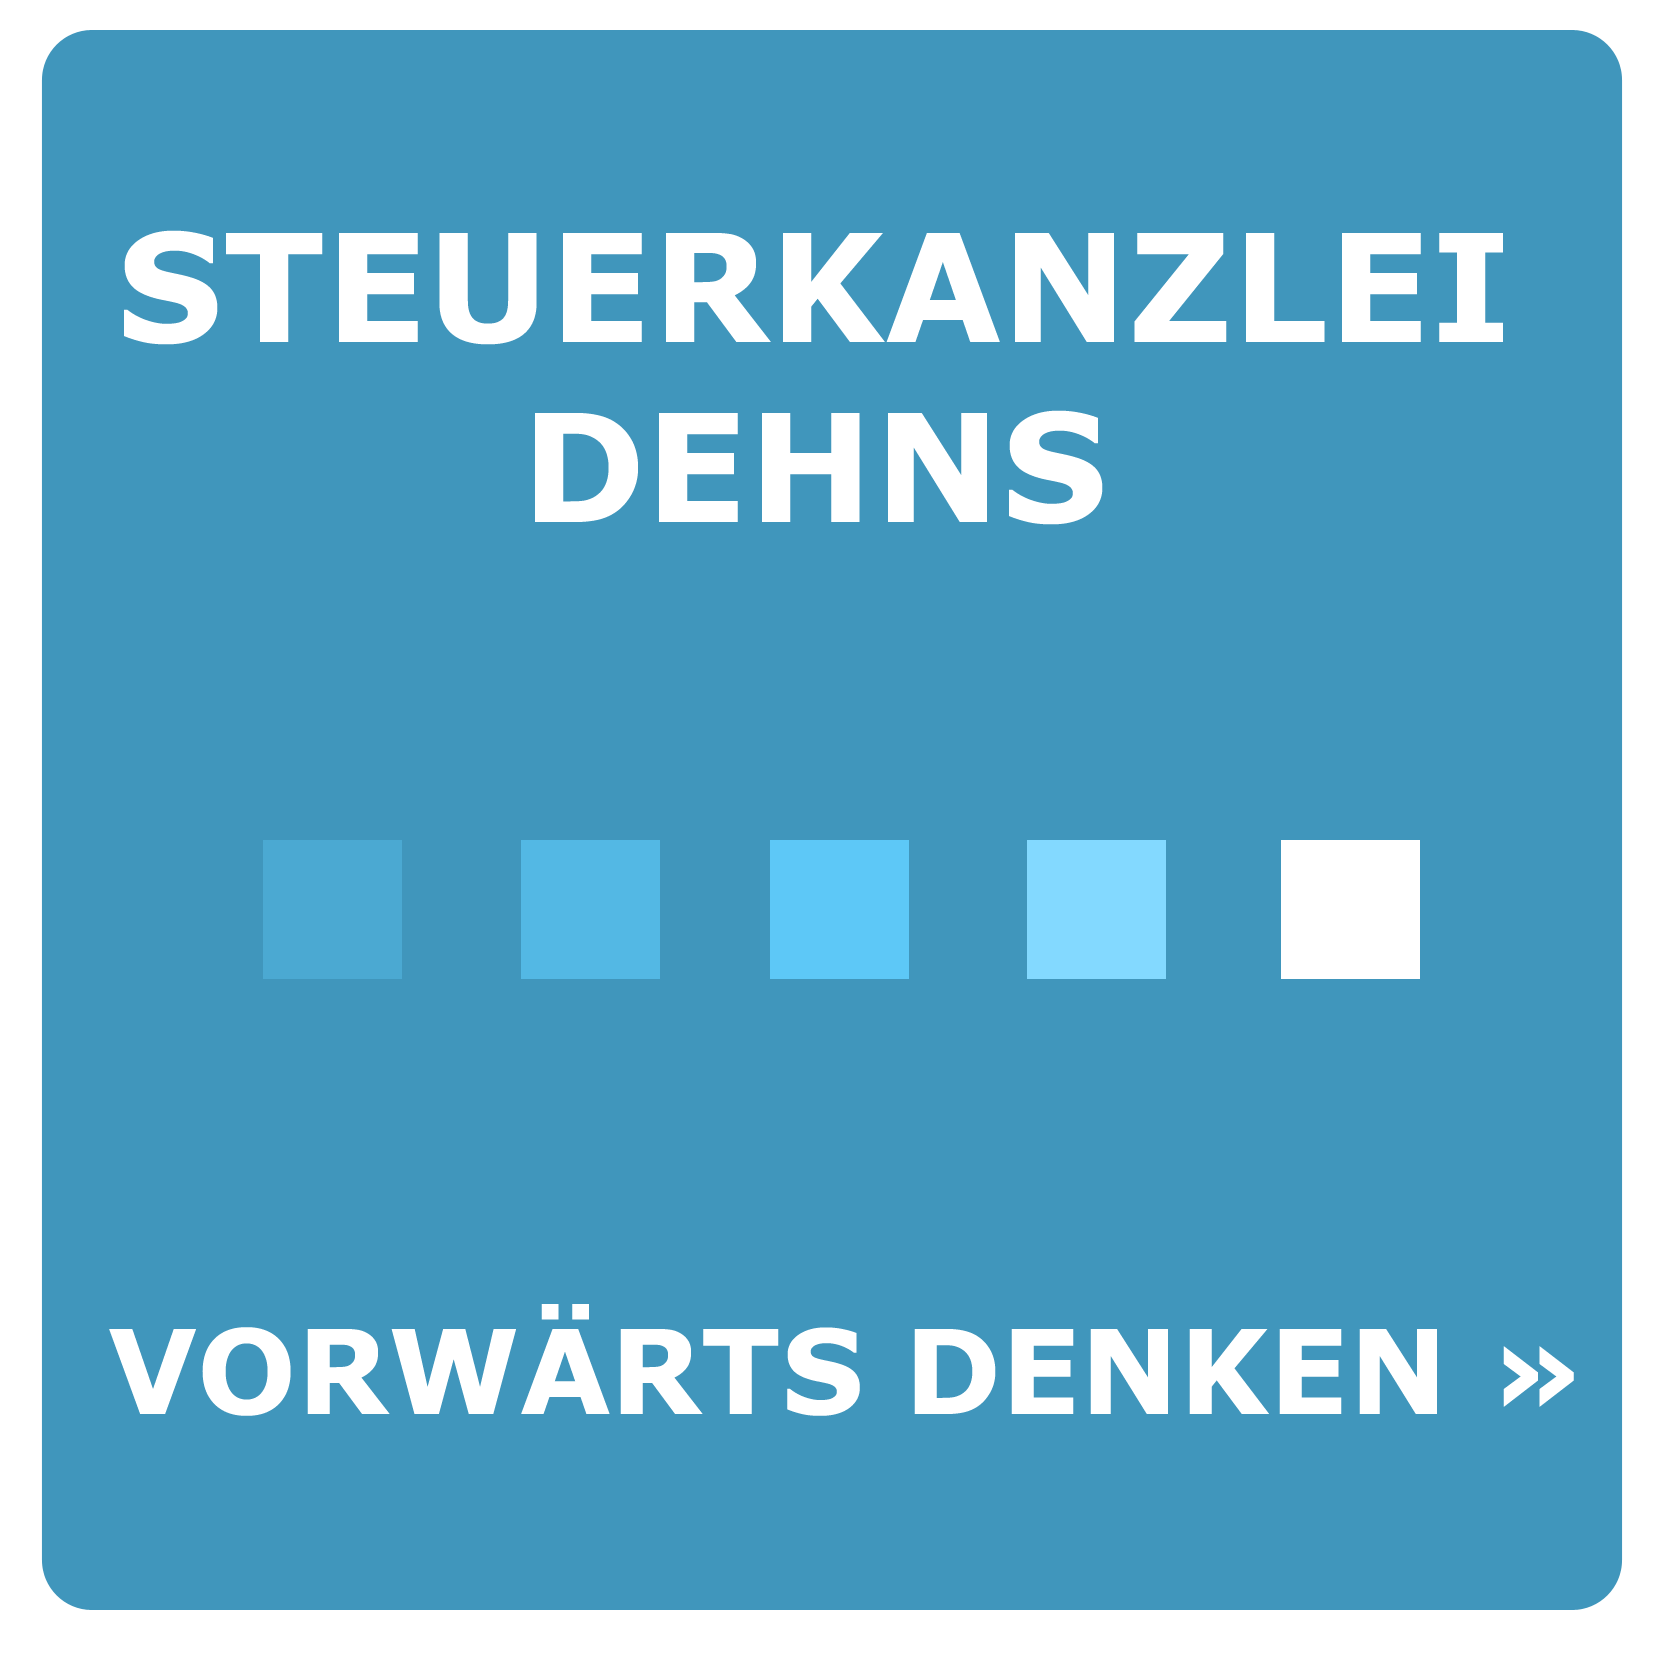 Das Logo der Steuerkanzlei und Hausverwaltung Dehns.